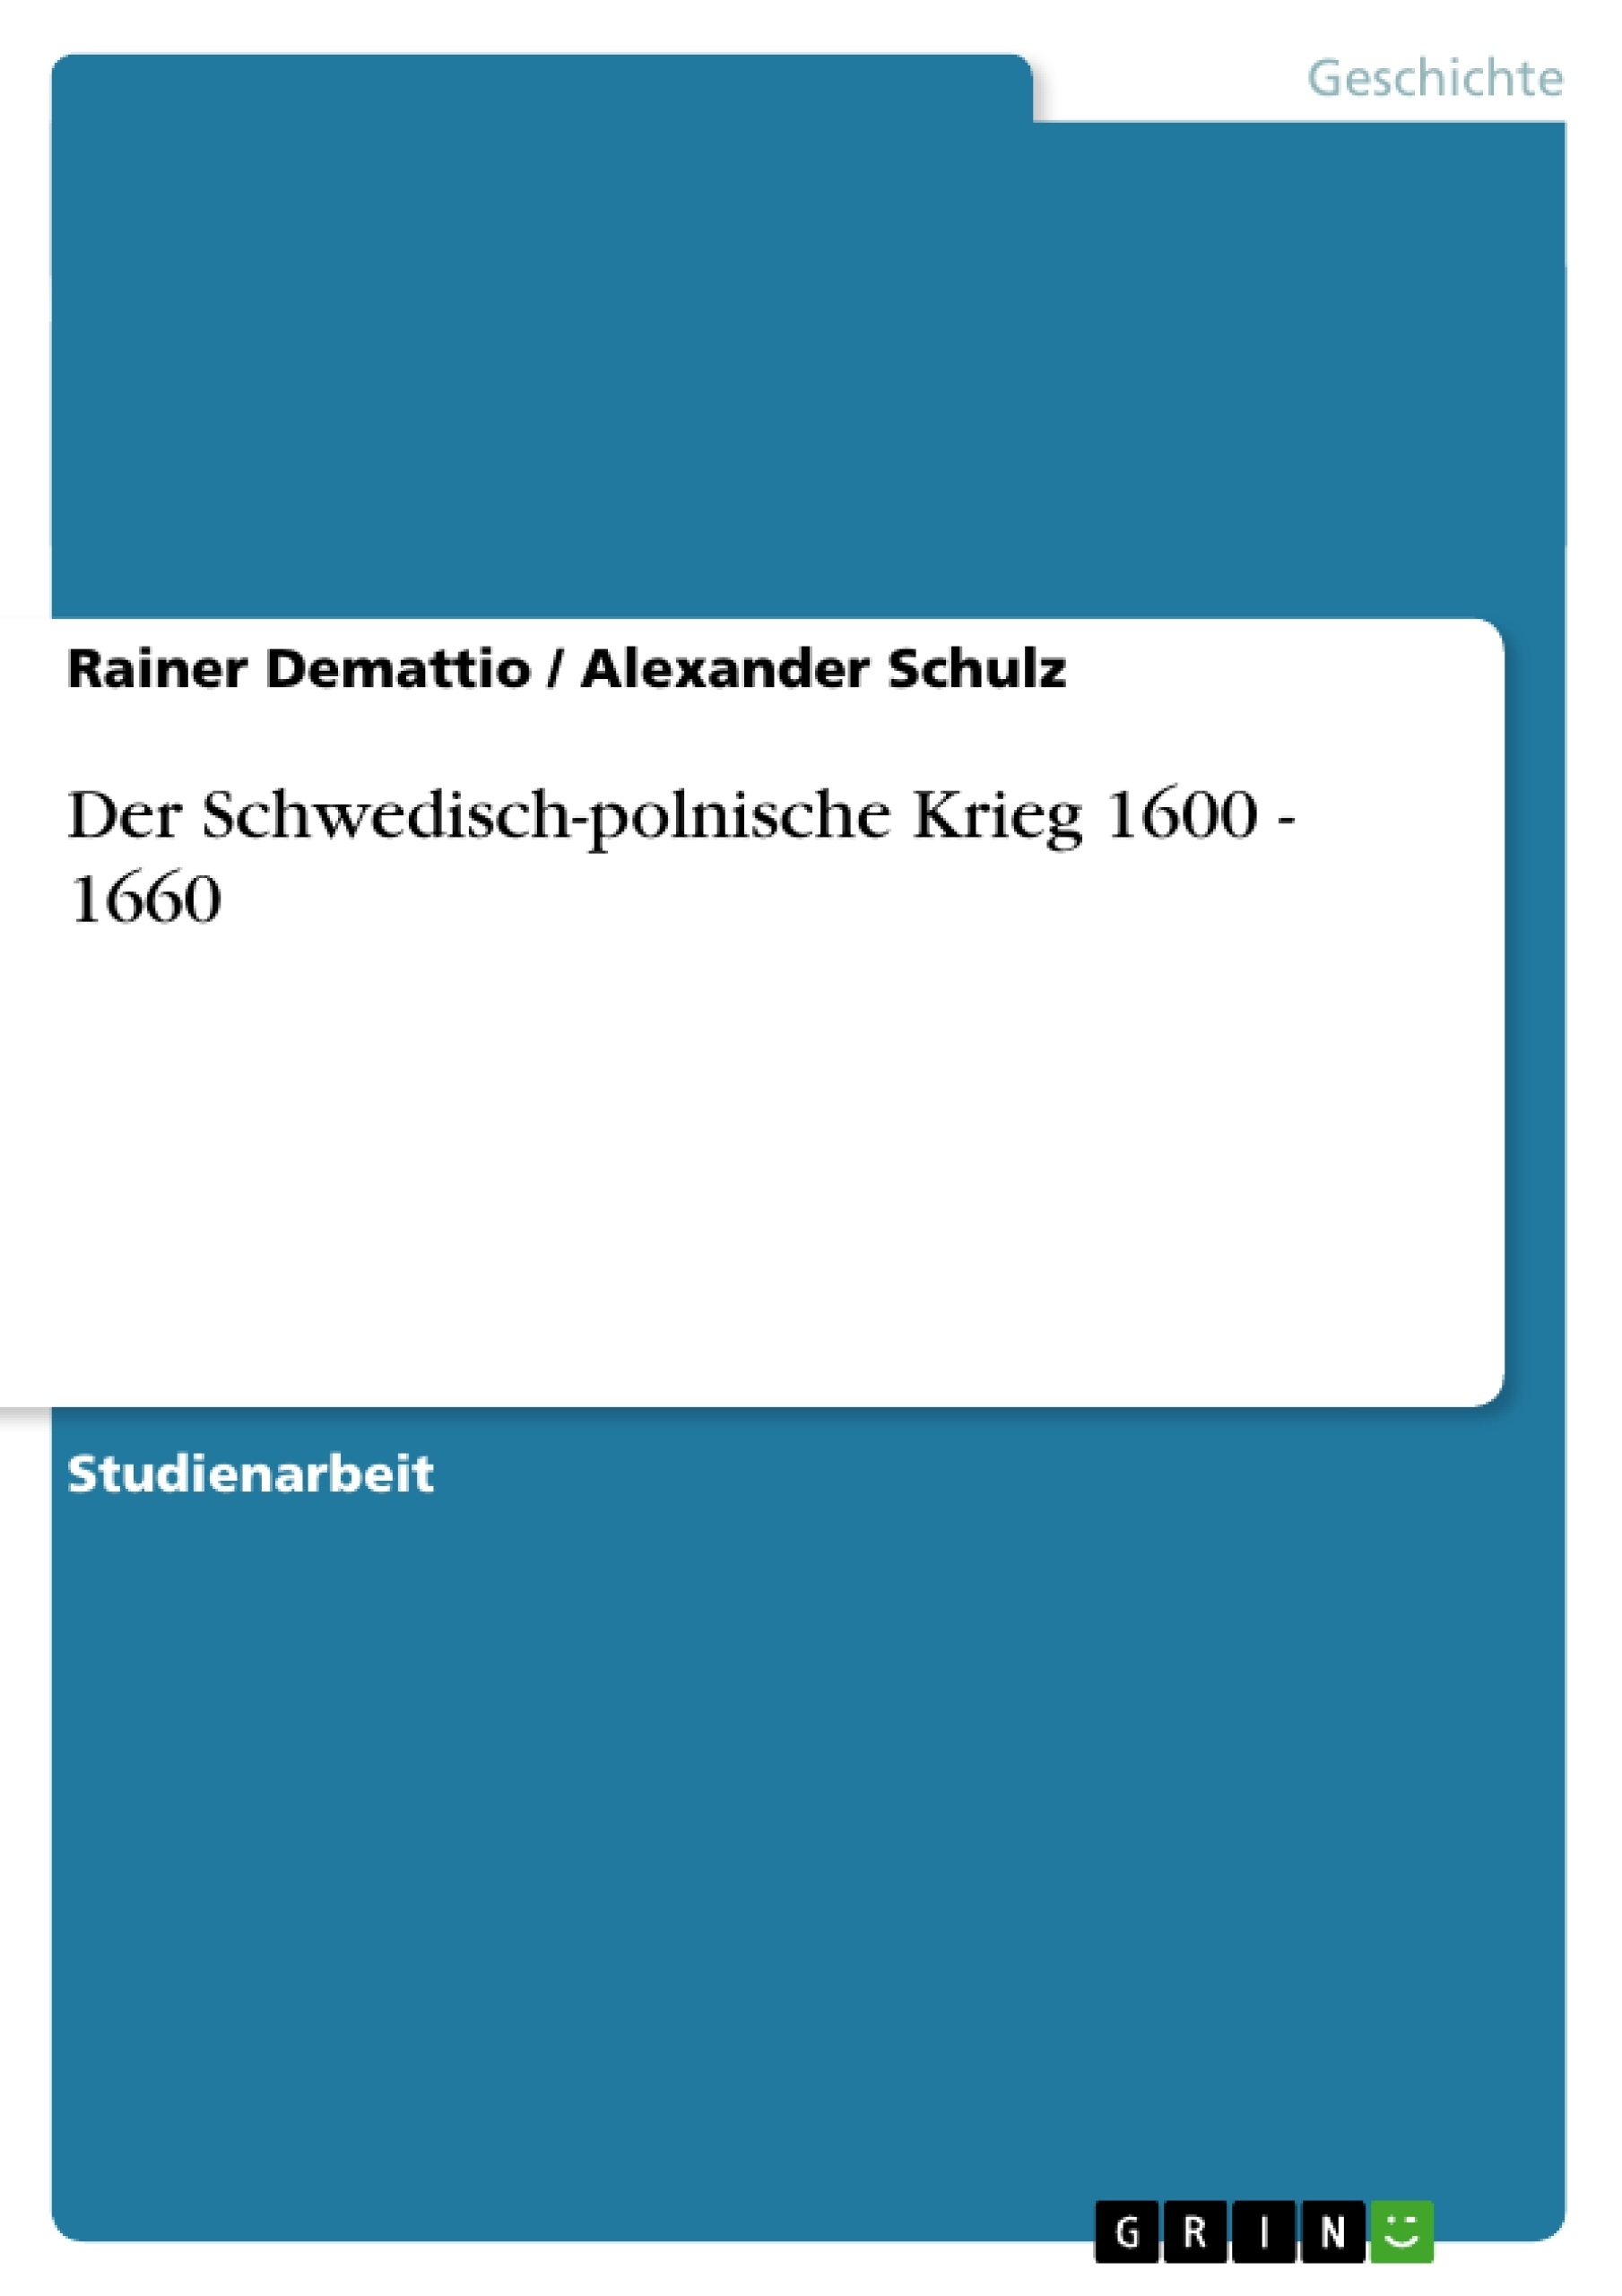 Title: Der Schwedisch-polnische Krieg 1600 - 1660